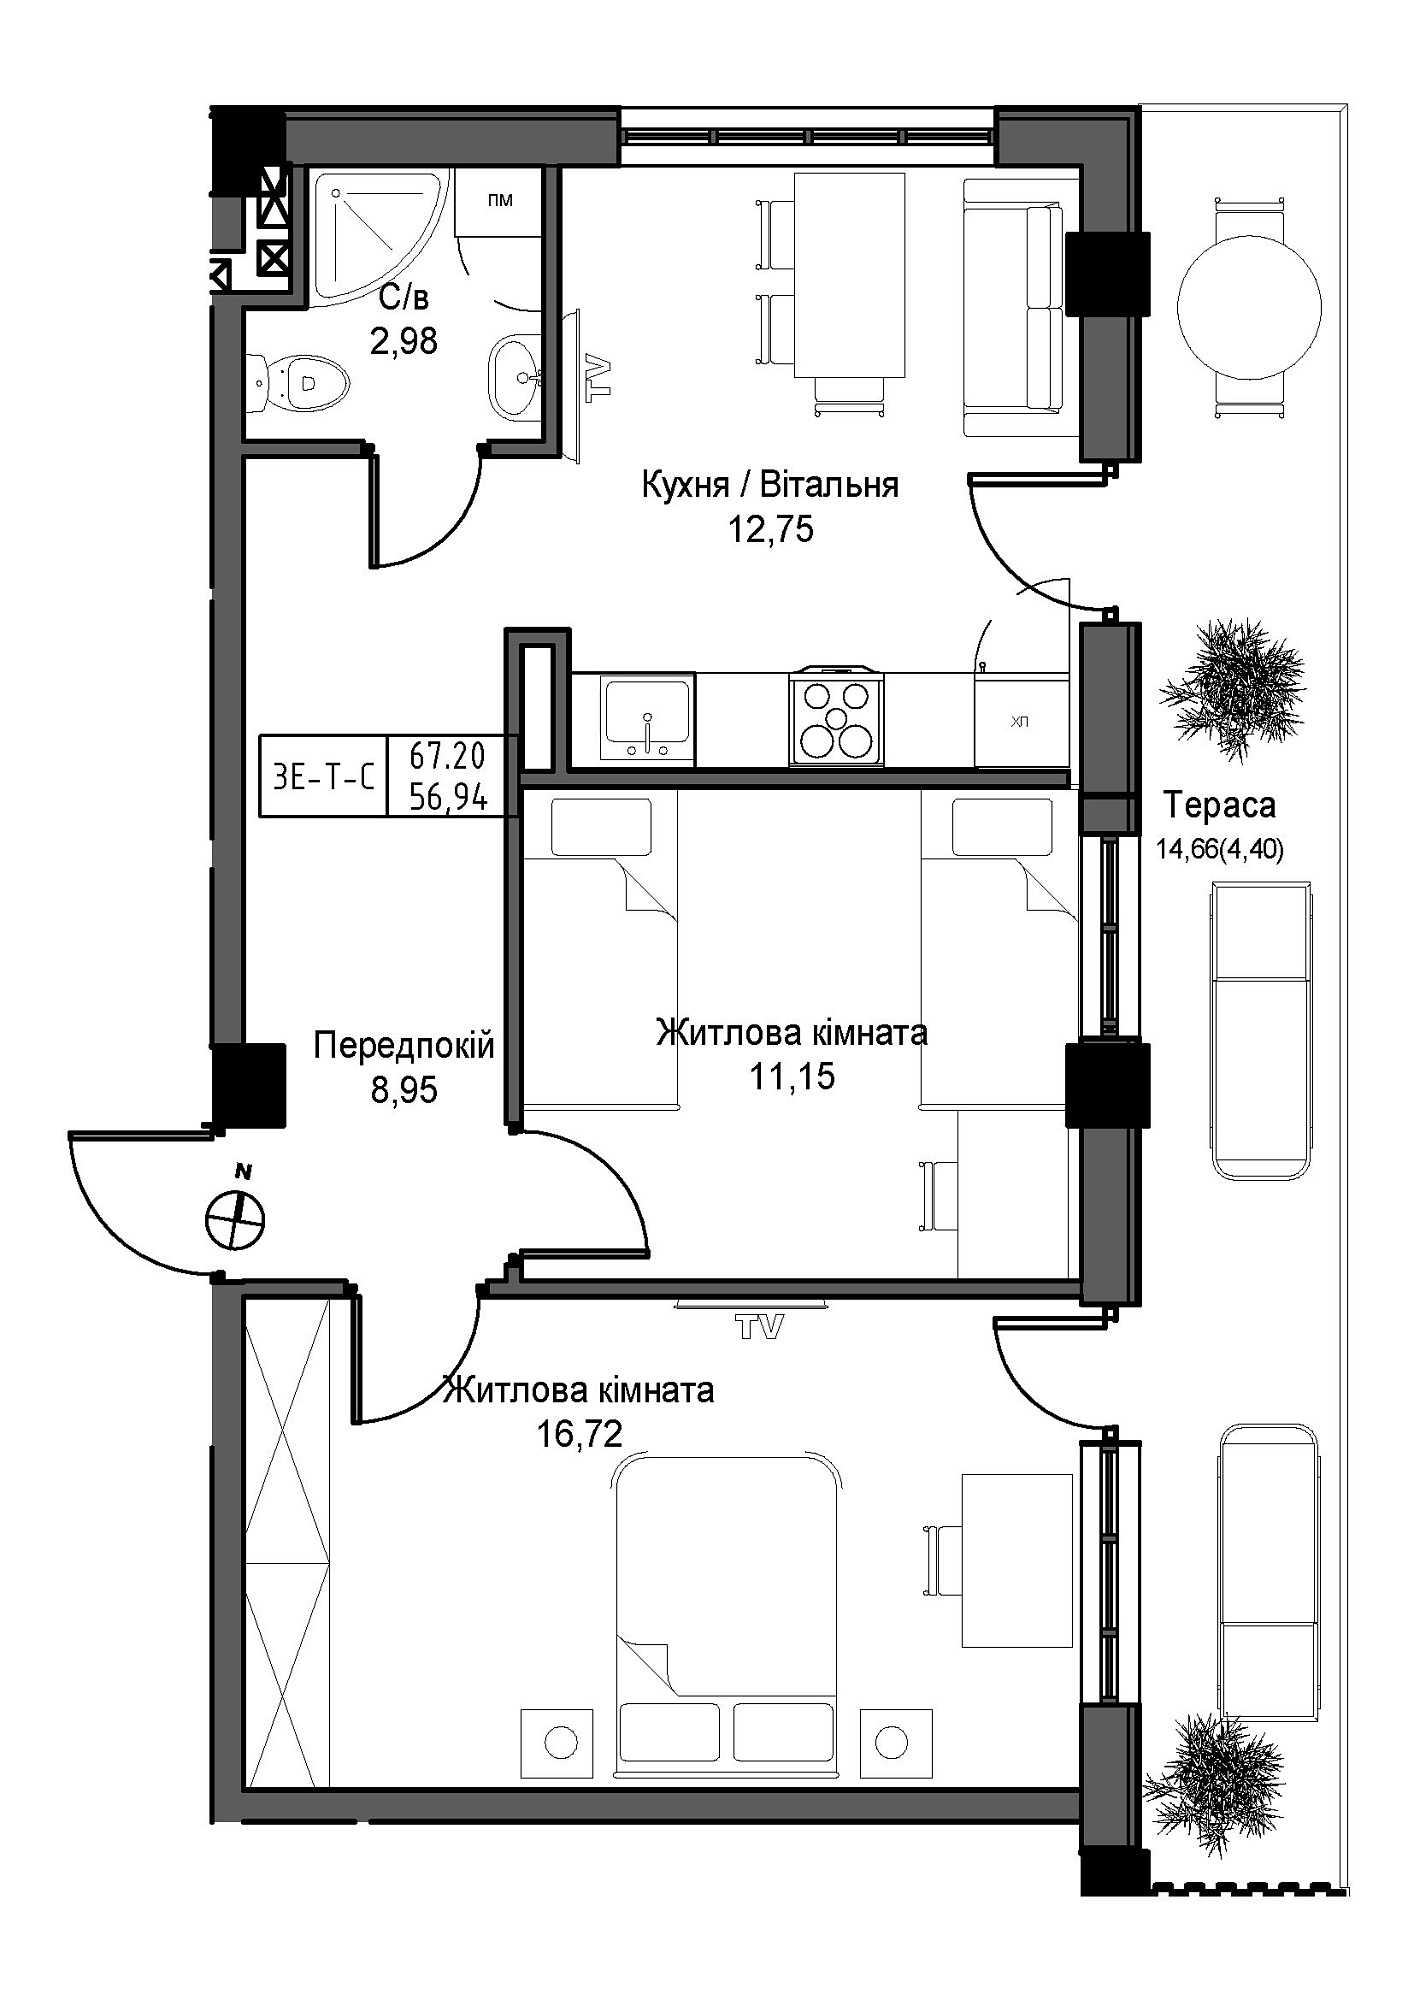 Планировка 2-к квартира площей 56.94м2, UM-007-11/0004.